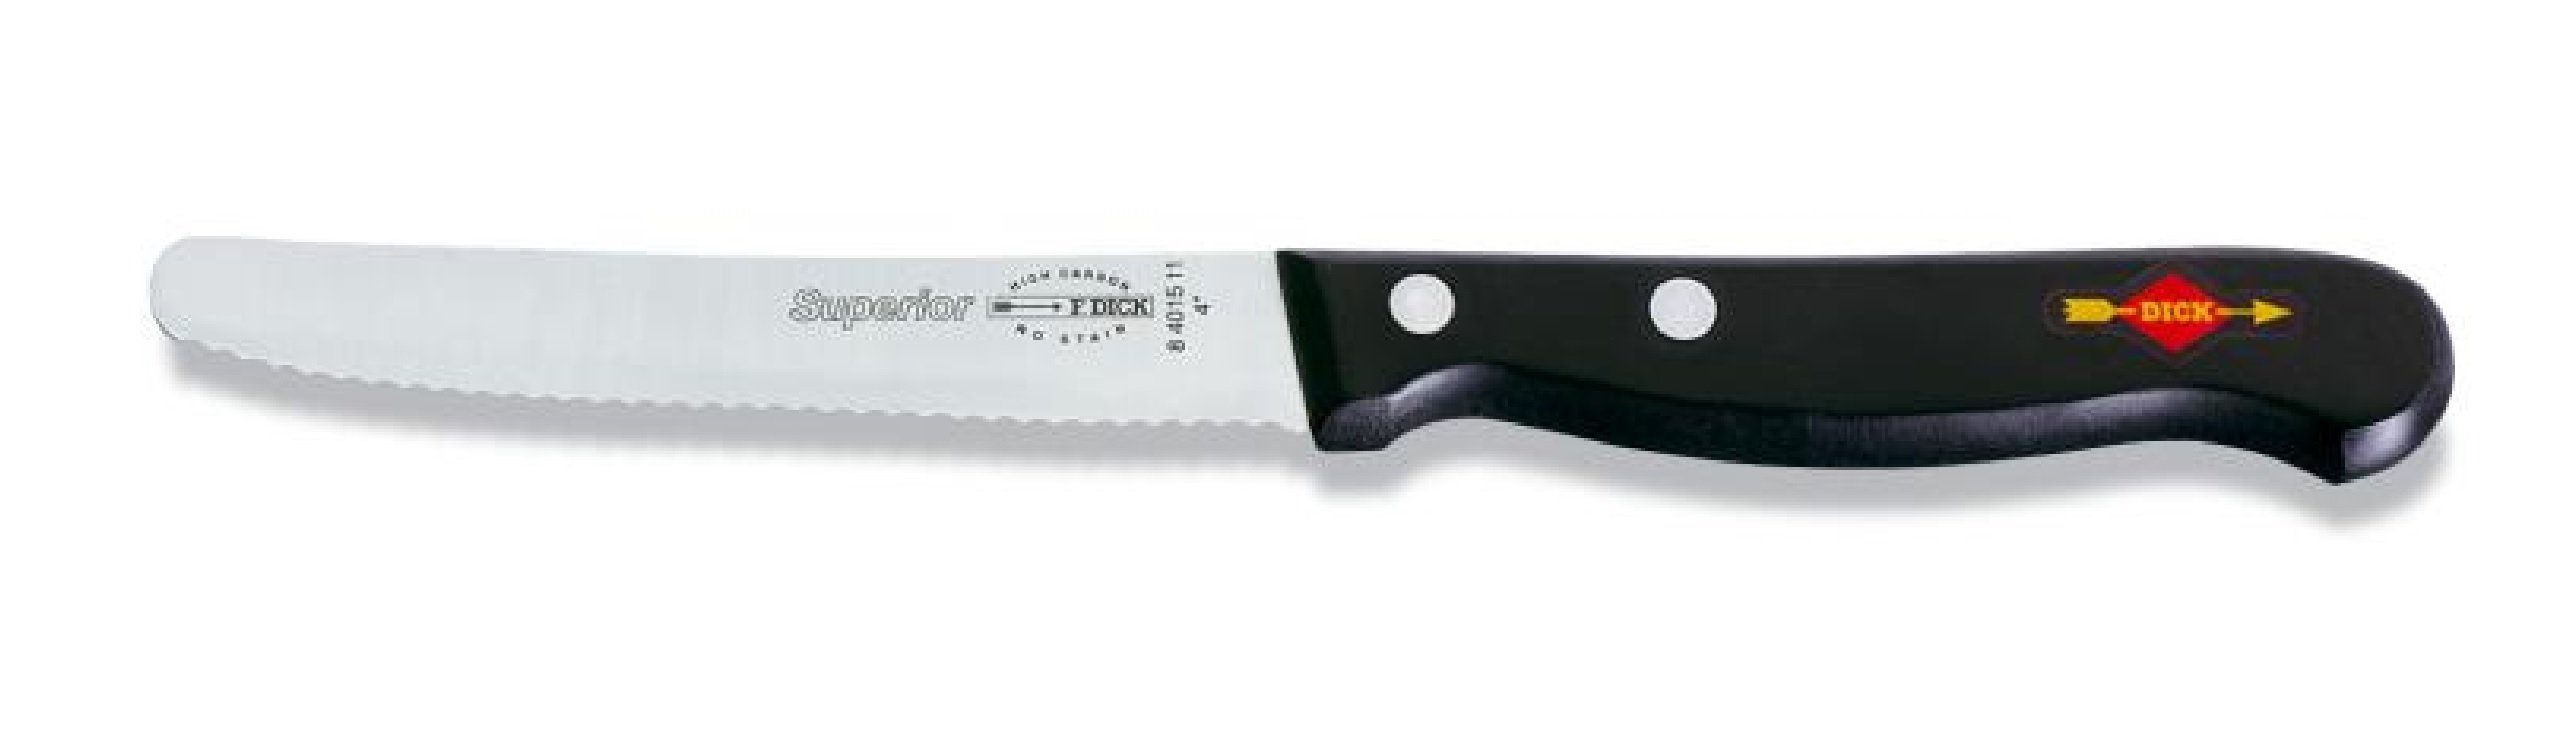 Messer Kochmesser Universalmesser Wellenschliff Dick 8401511 Dick cm 11 Allzweckmesser Klinge